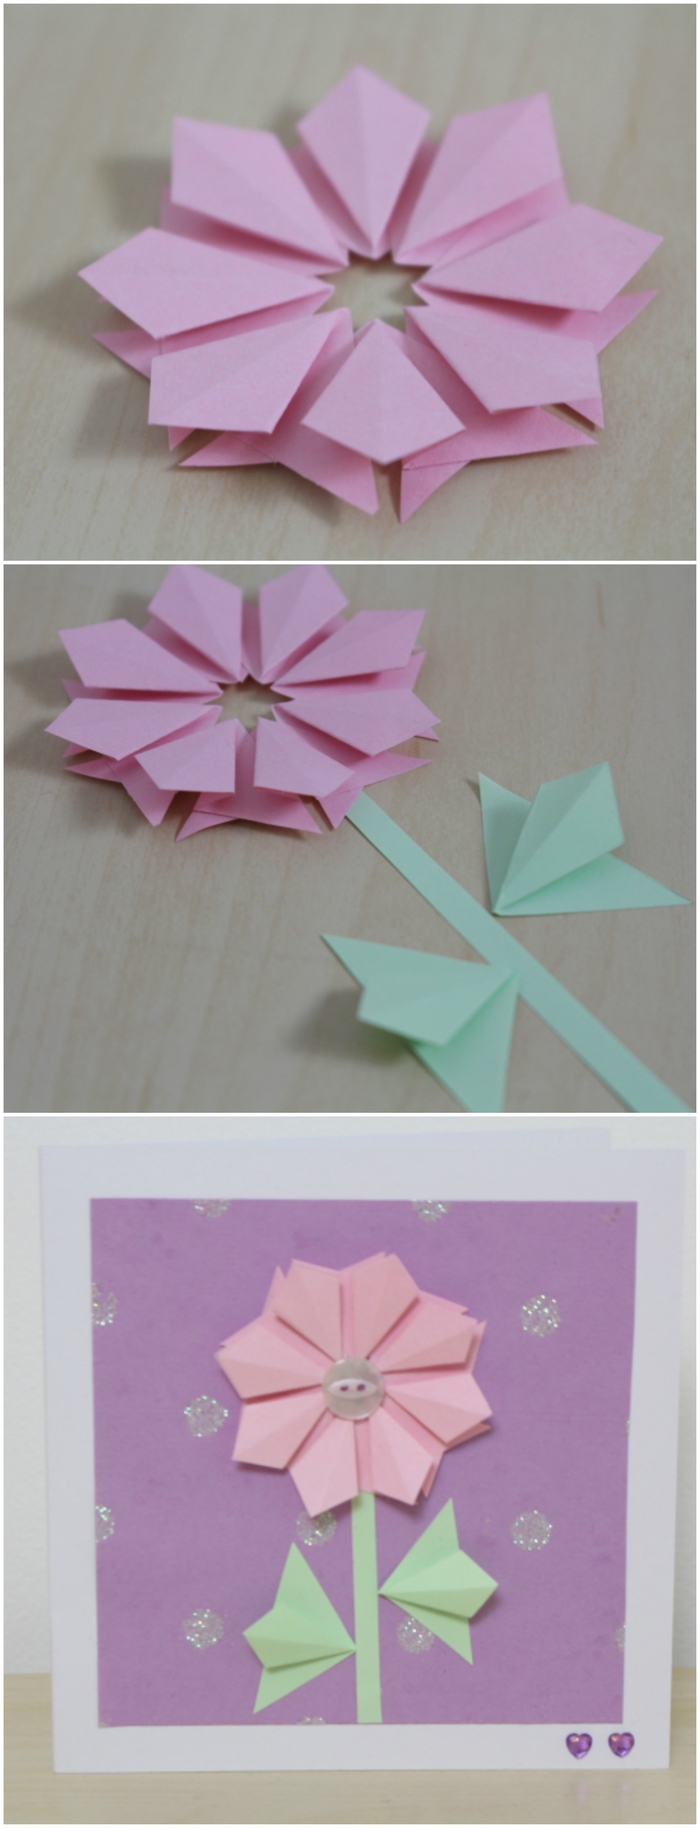 une carte de voeux personnalisée avec une fleur en origami, idée pour une carte de voeux personnalisée pour la fête des mères